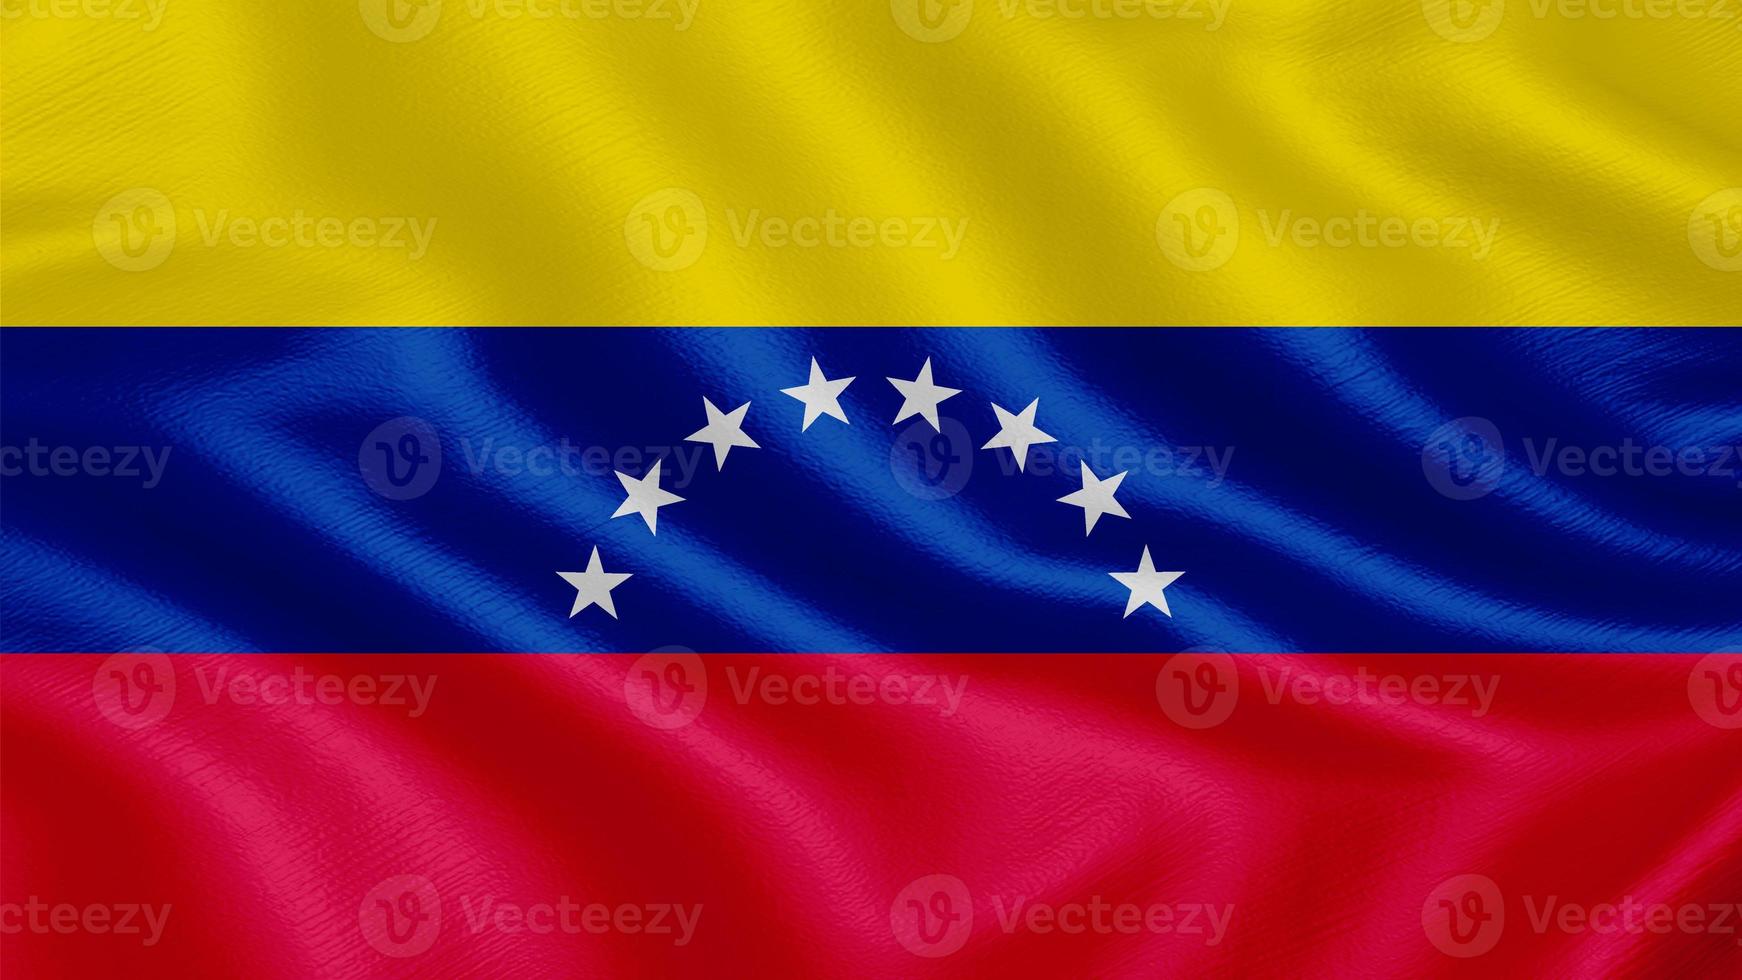 bandera de venezuela. Ilustración de representación 3d de bandera ondeante realista con textura de tela muy detallada. foto